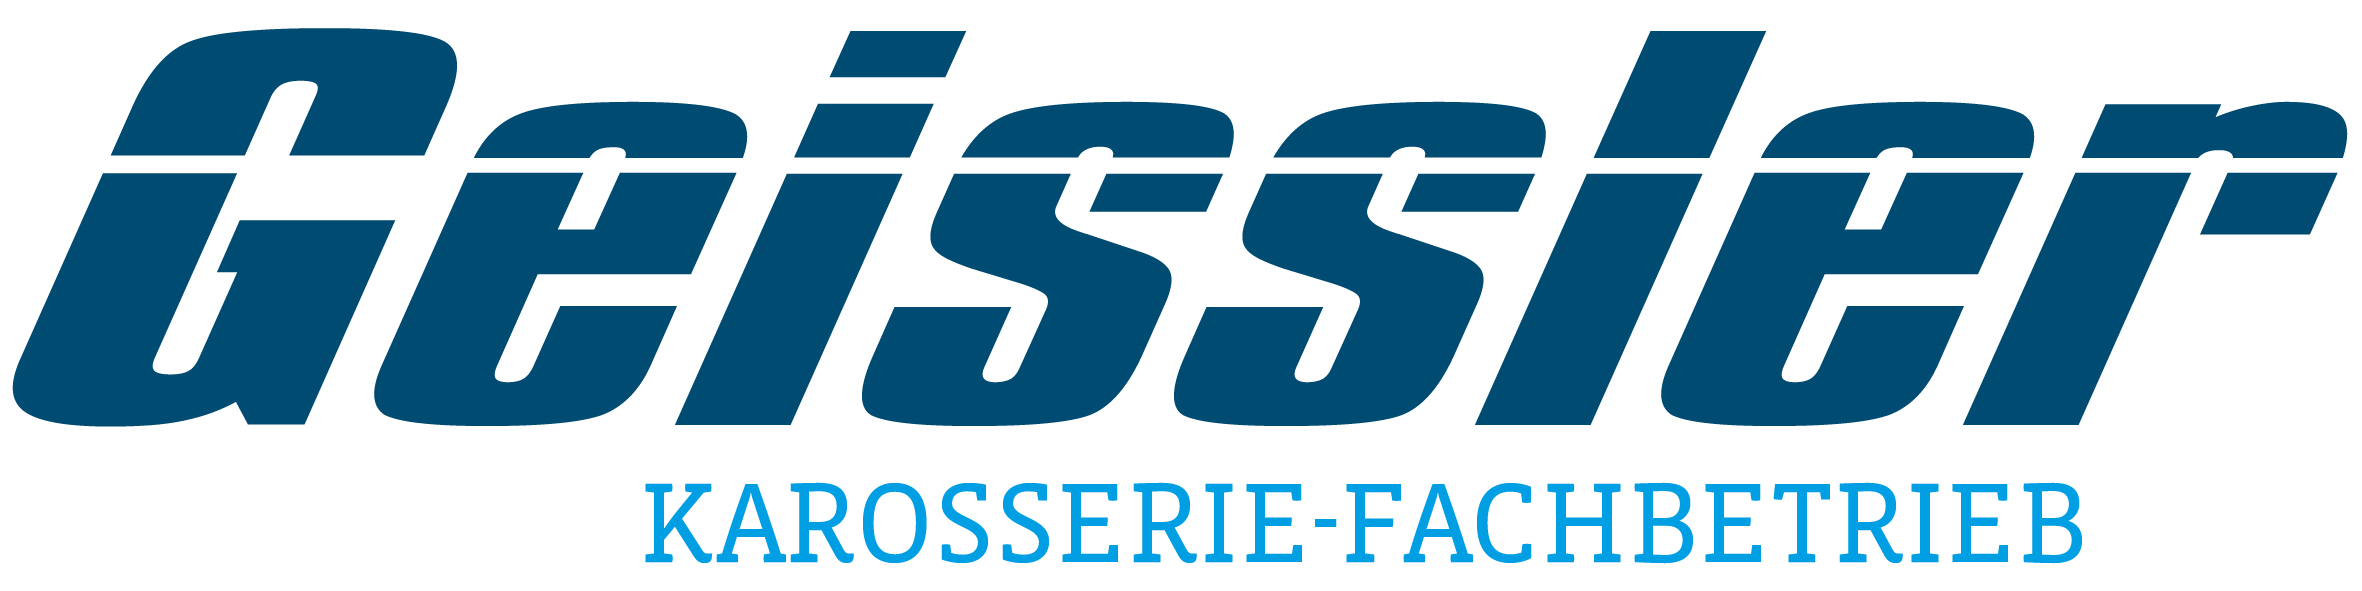 Geissler – Ihr Karosserie-Fachbetrieb in Gröbenzell